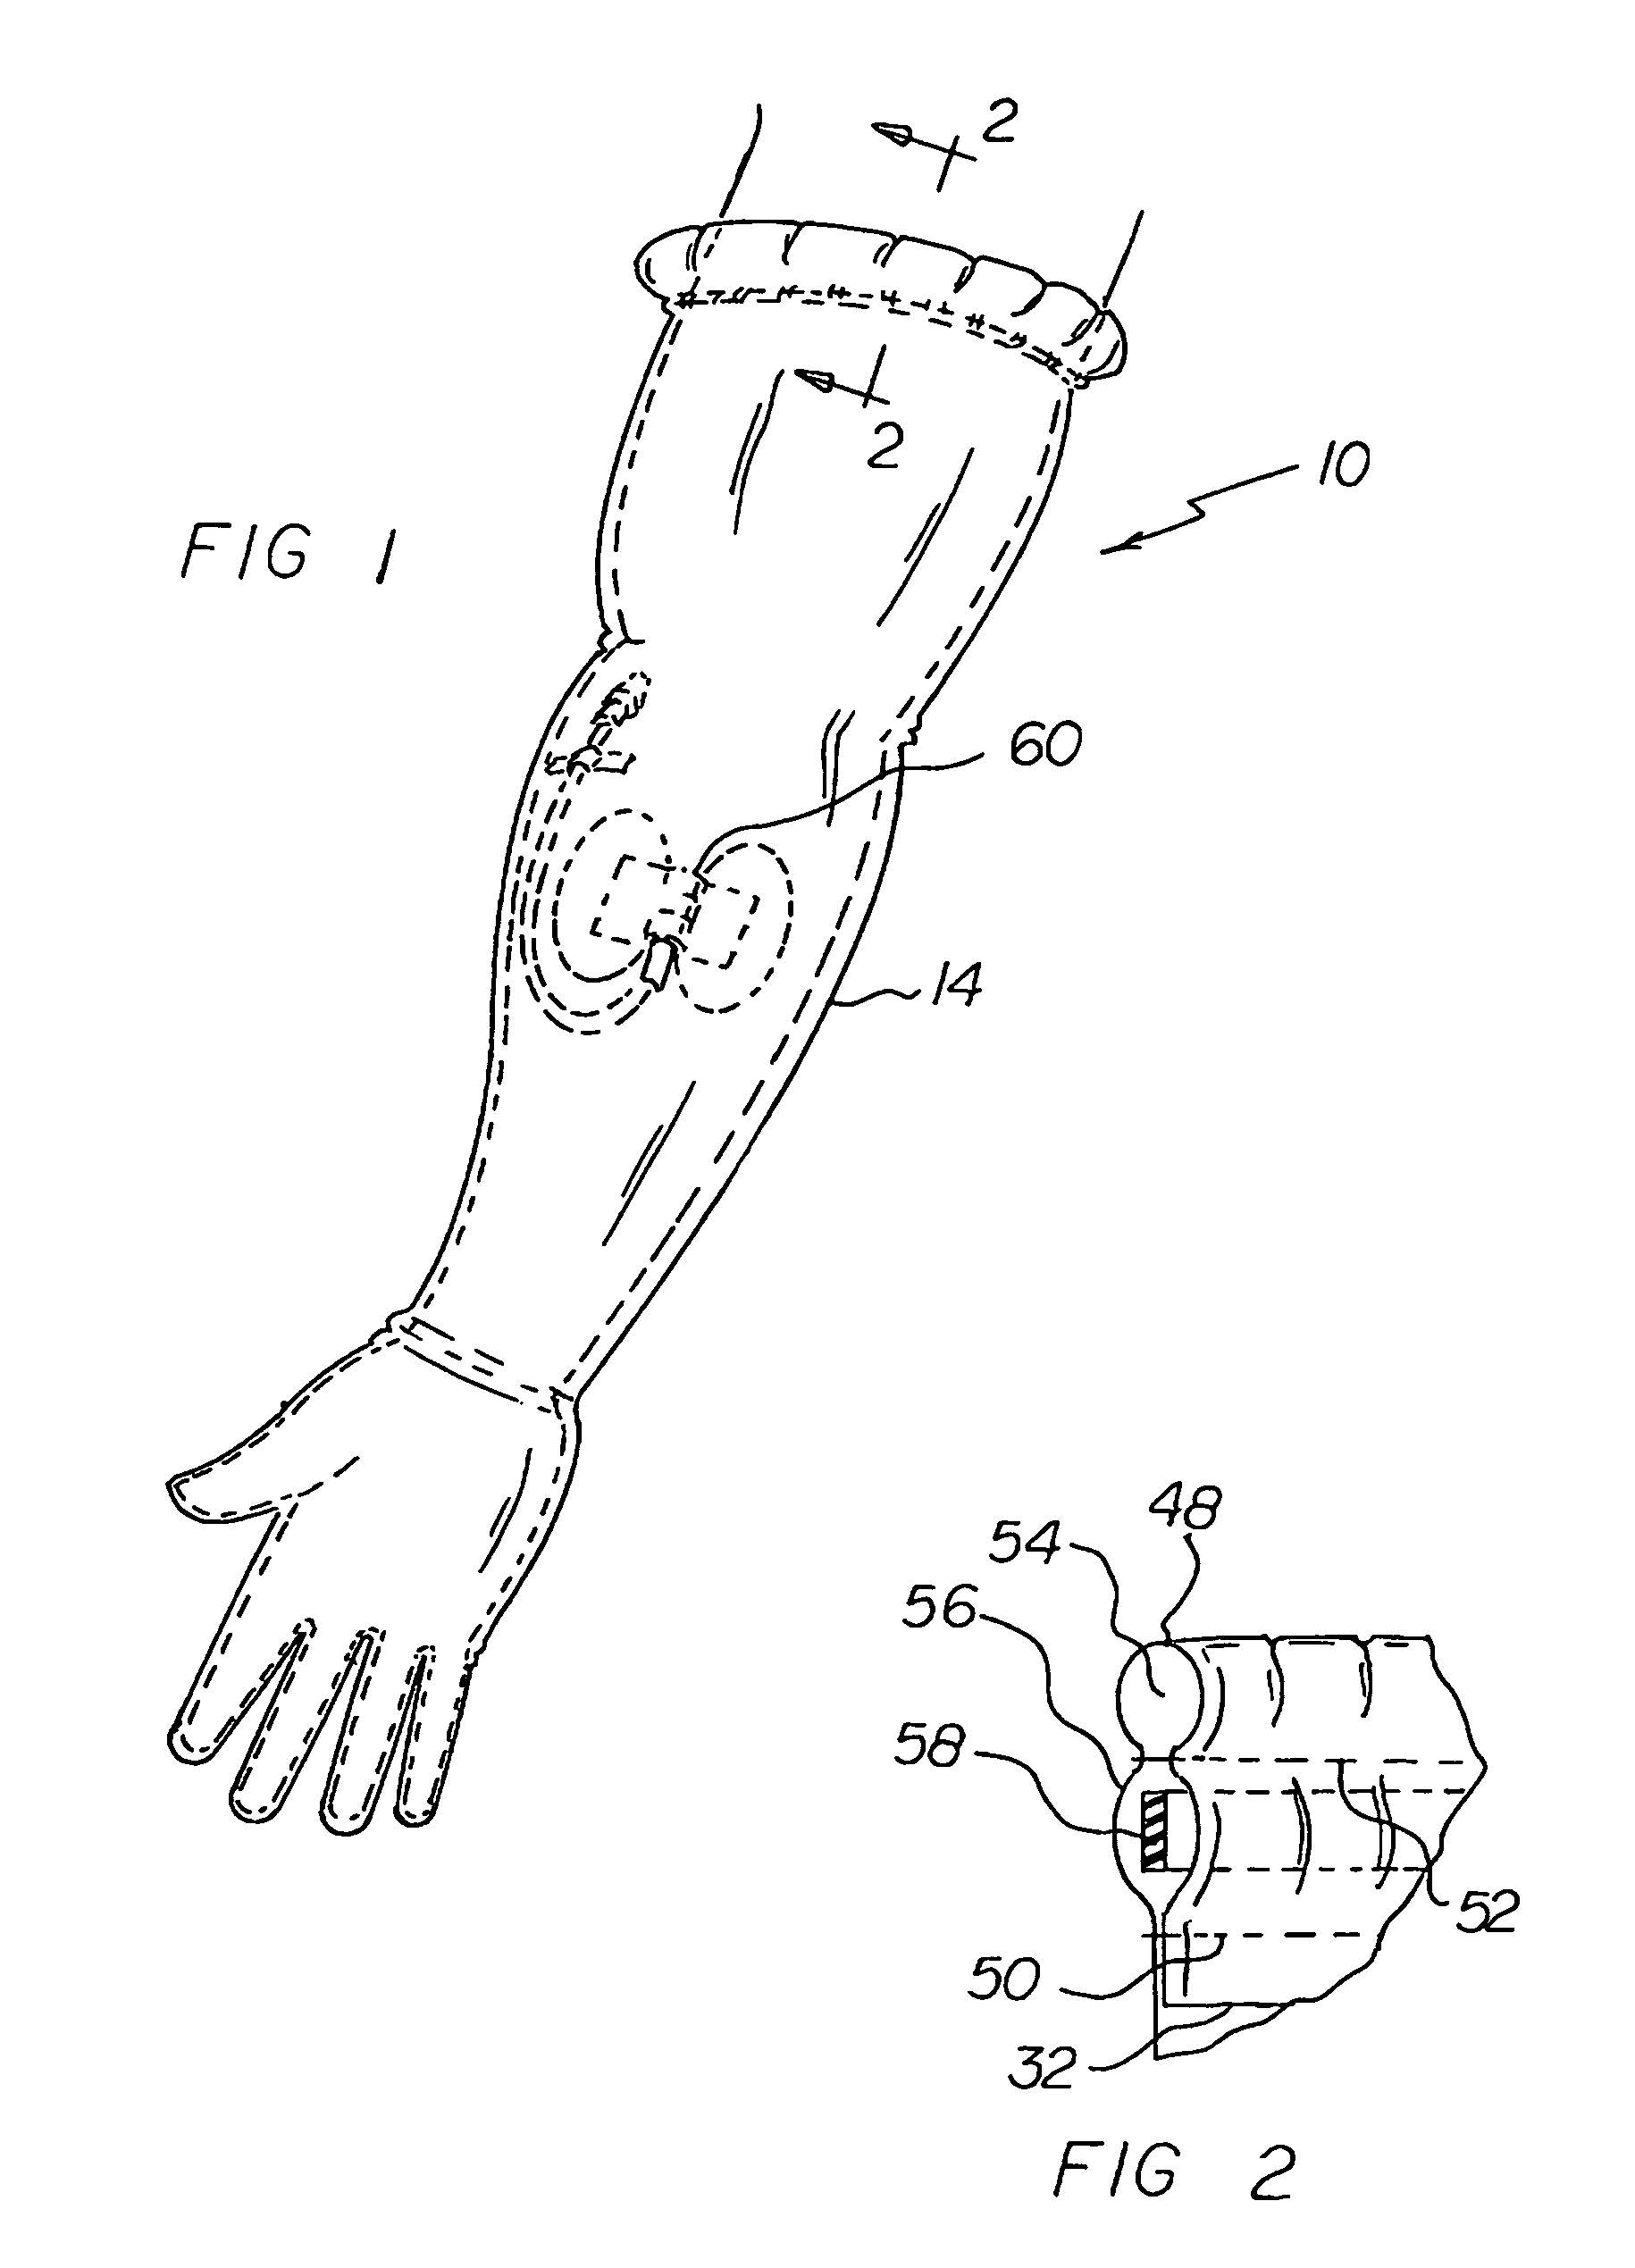 Shower/glove system